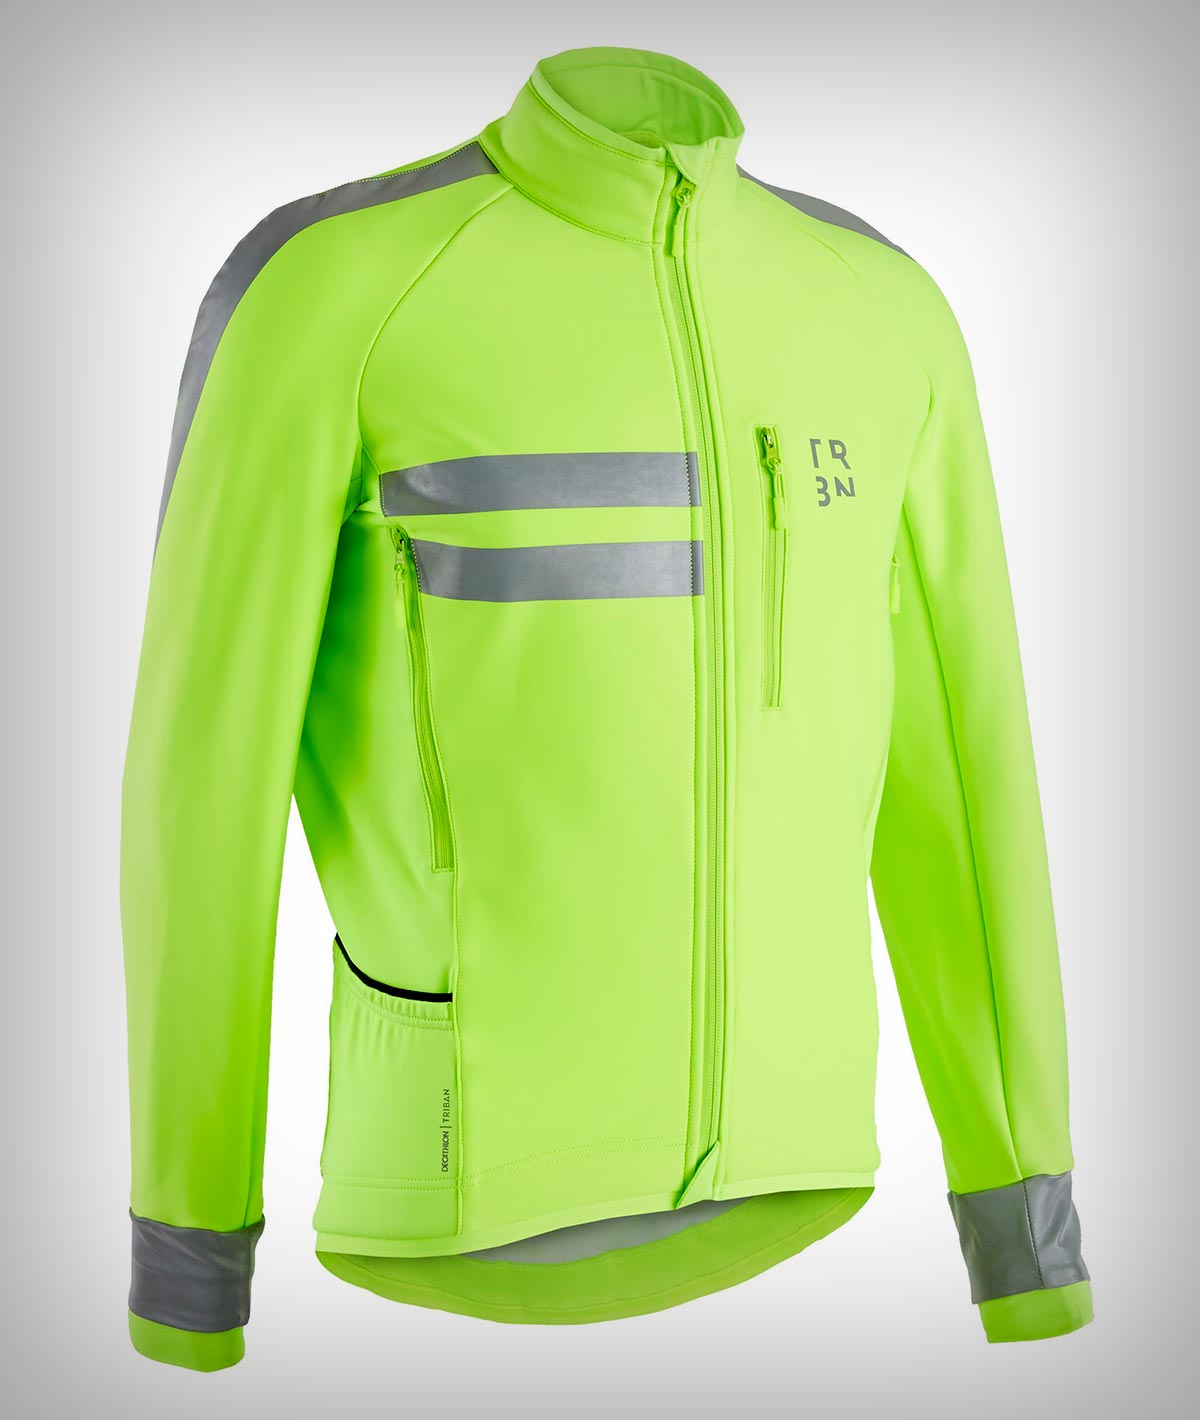 Decathlon liquida la Triban RC500, una chaqueta con membrana térmica y visibilidad homologada de día y de noche